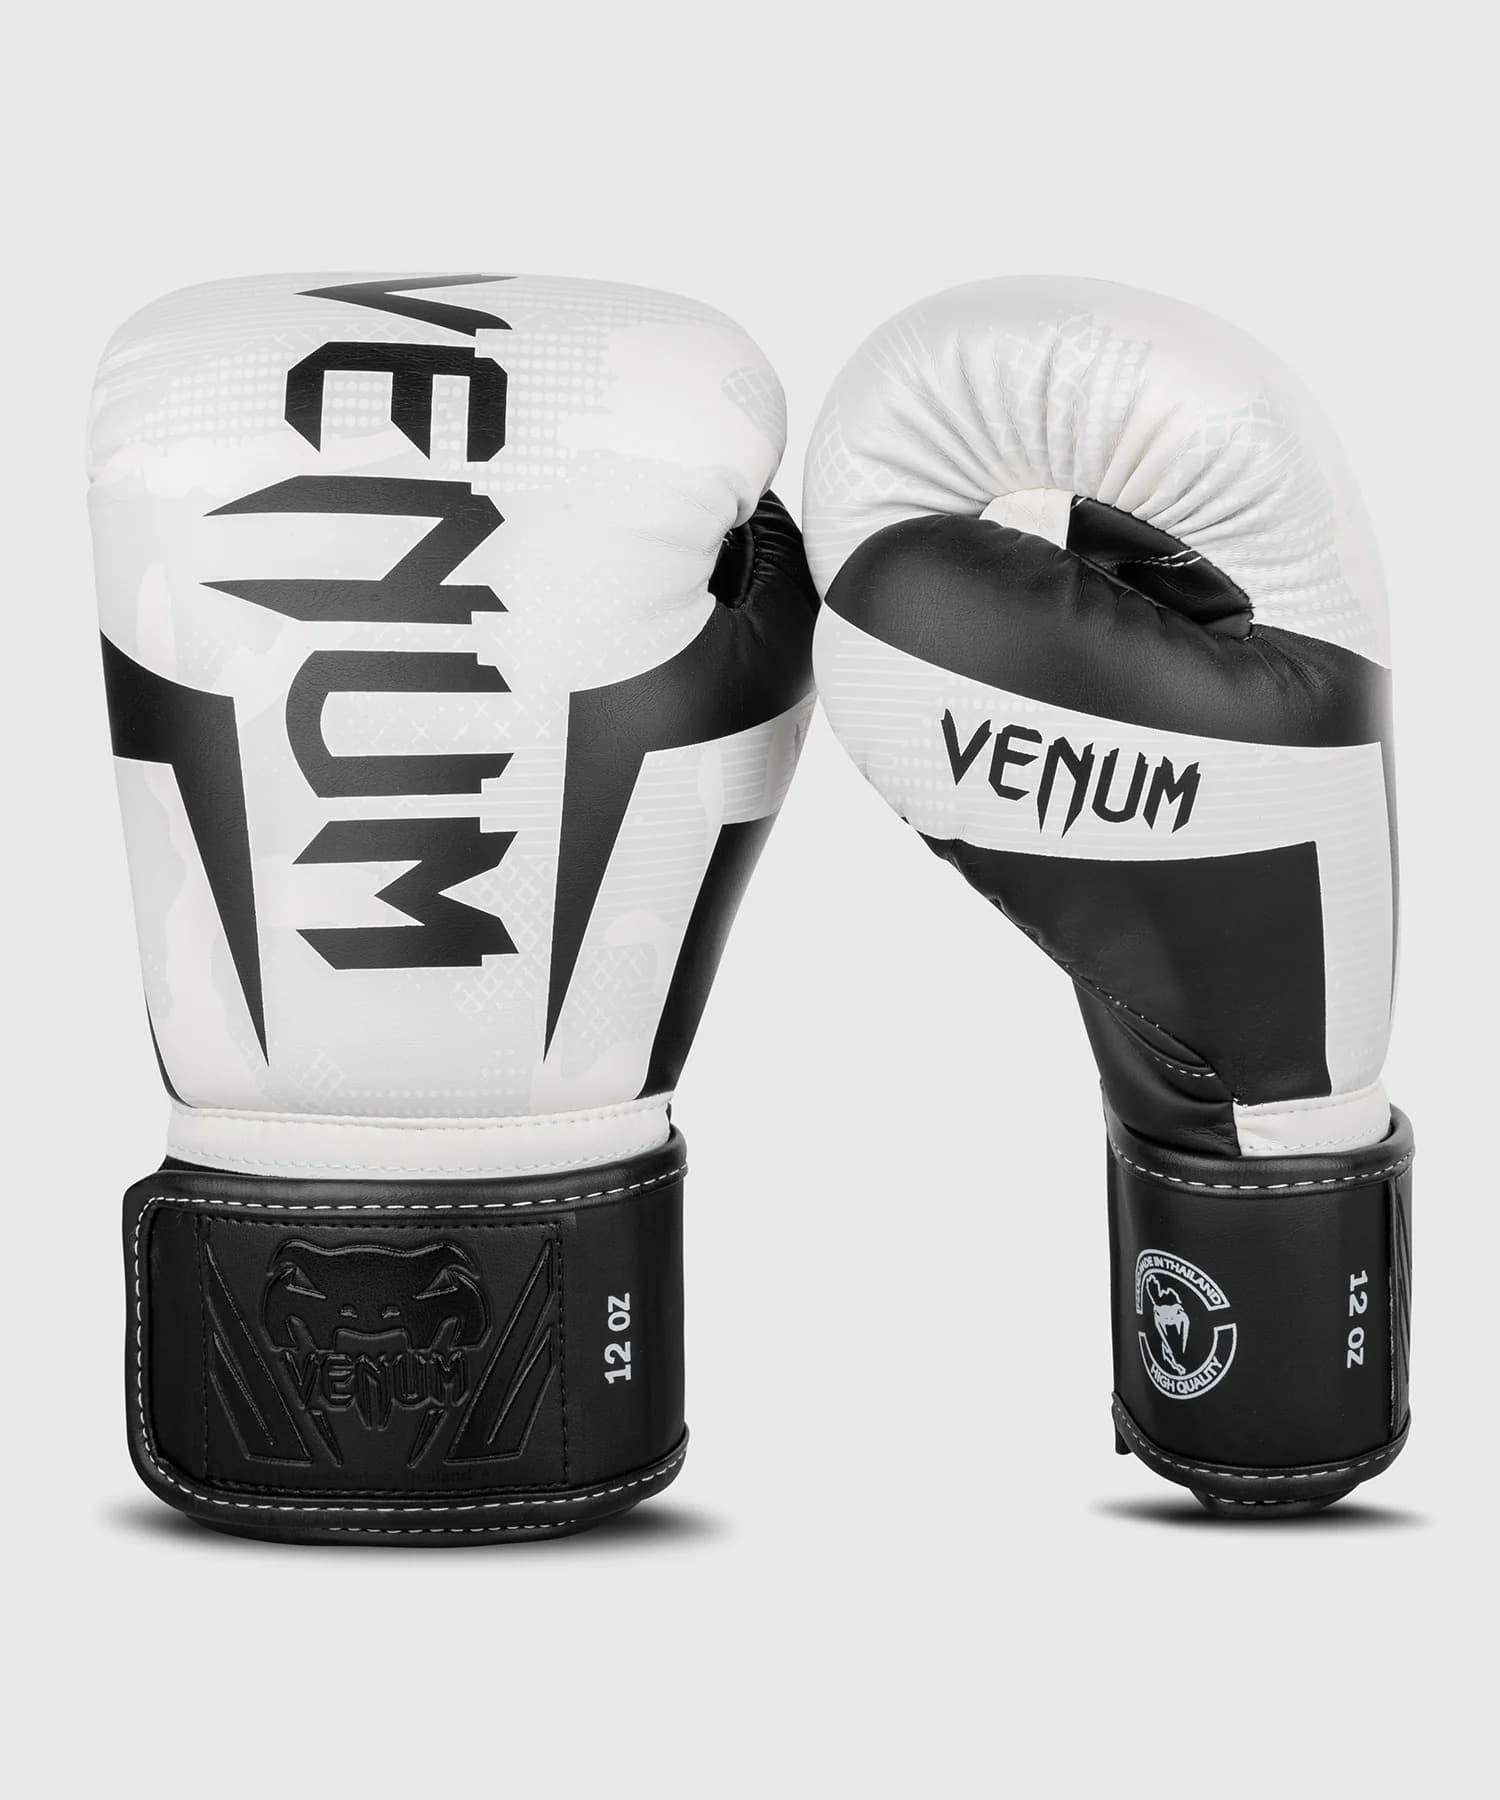 Gants de boxe Venum Elite blanc / camouflage > Livraison Gratuite